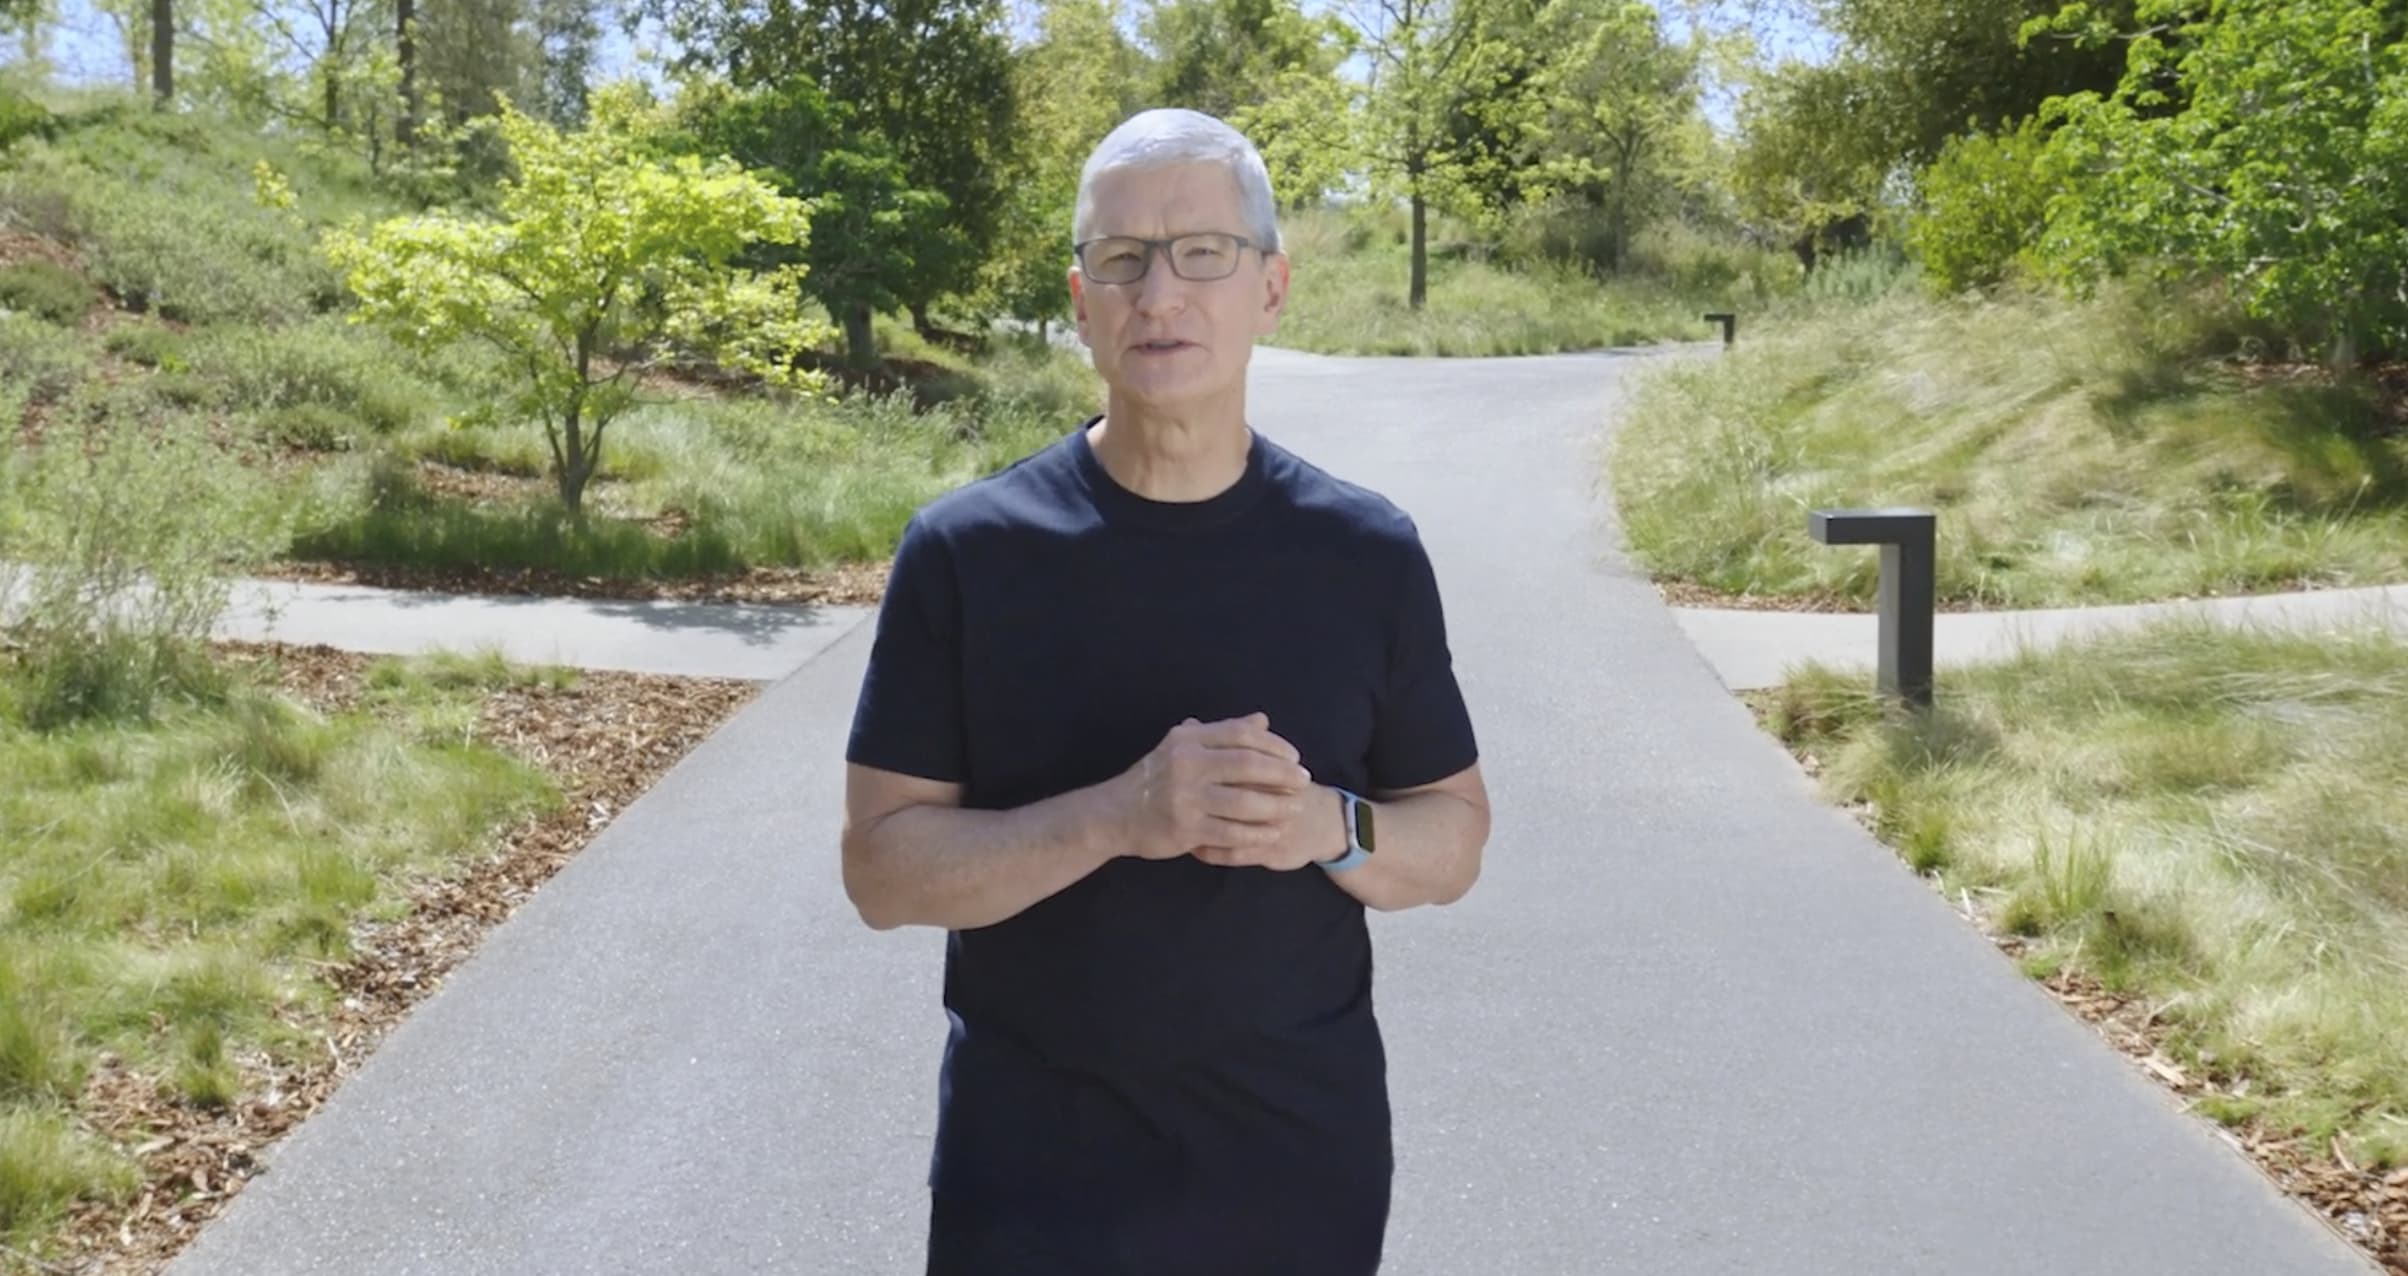 La estrategia del CEO de Apple, Tim Cook, para despejarse la cabeza: salir